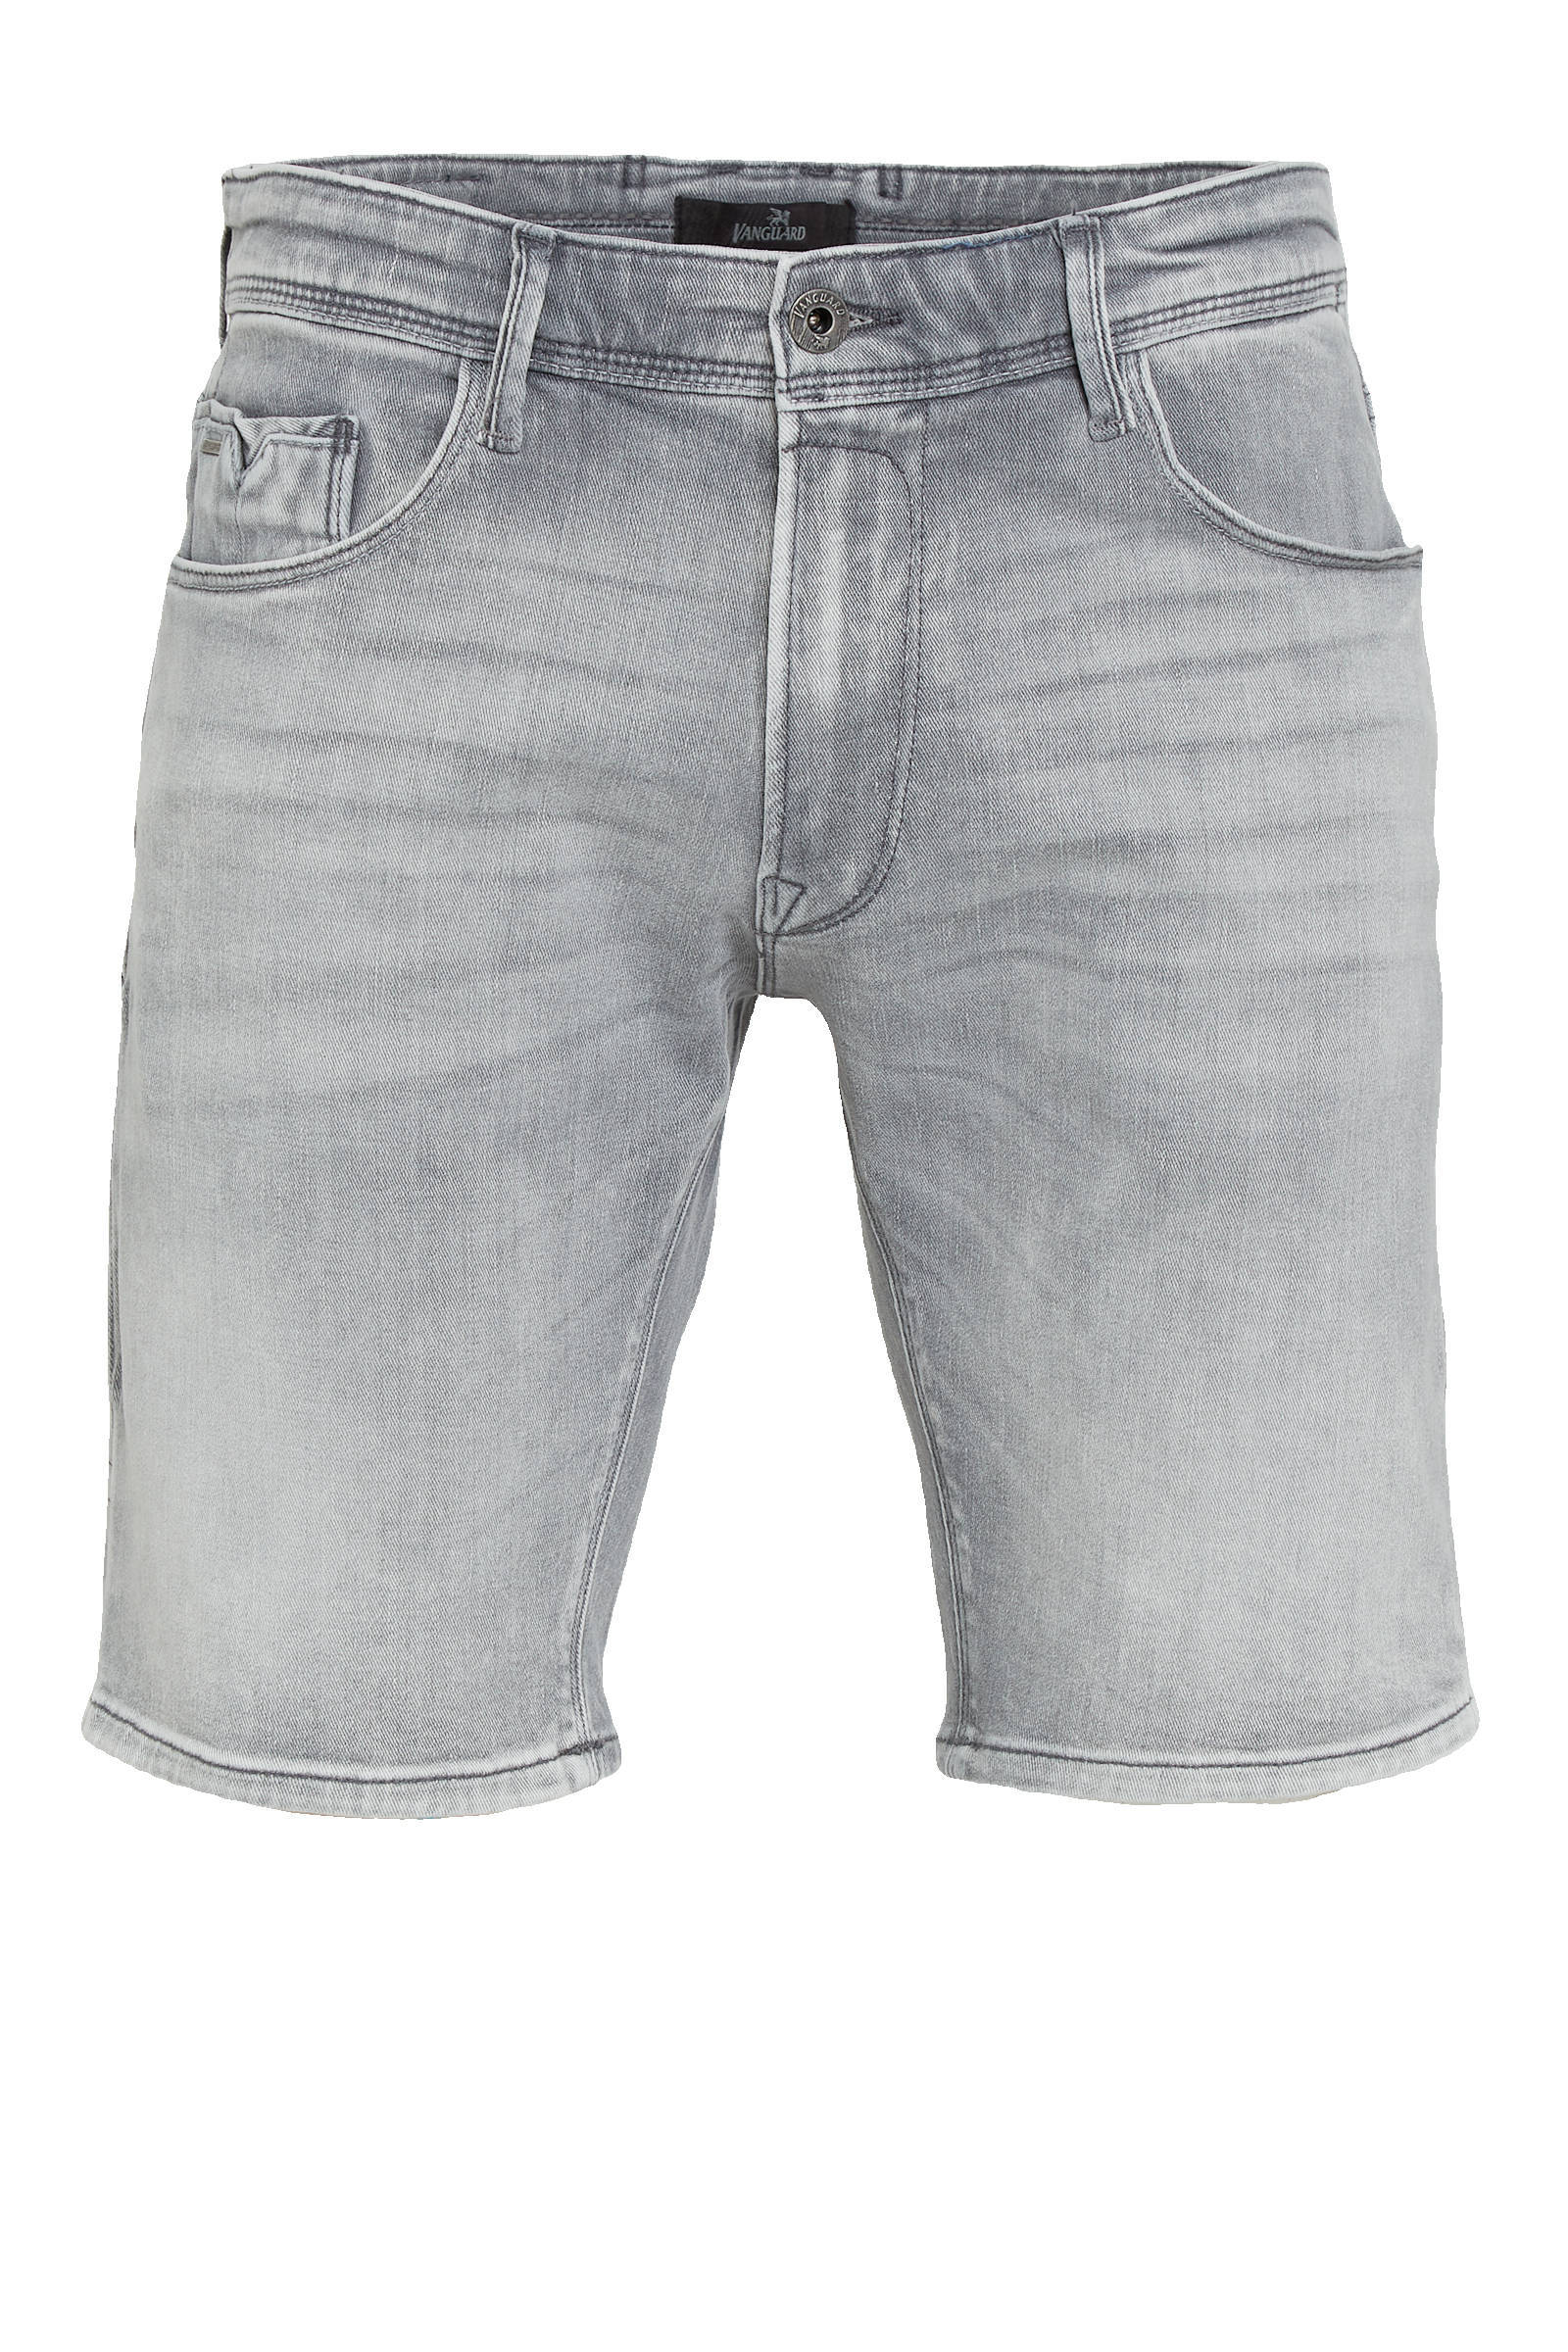 Vanguard Shorts Vsh212755 , Grijs, Heren online kopen